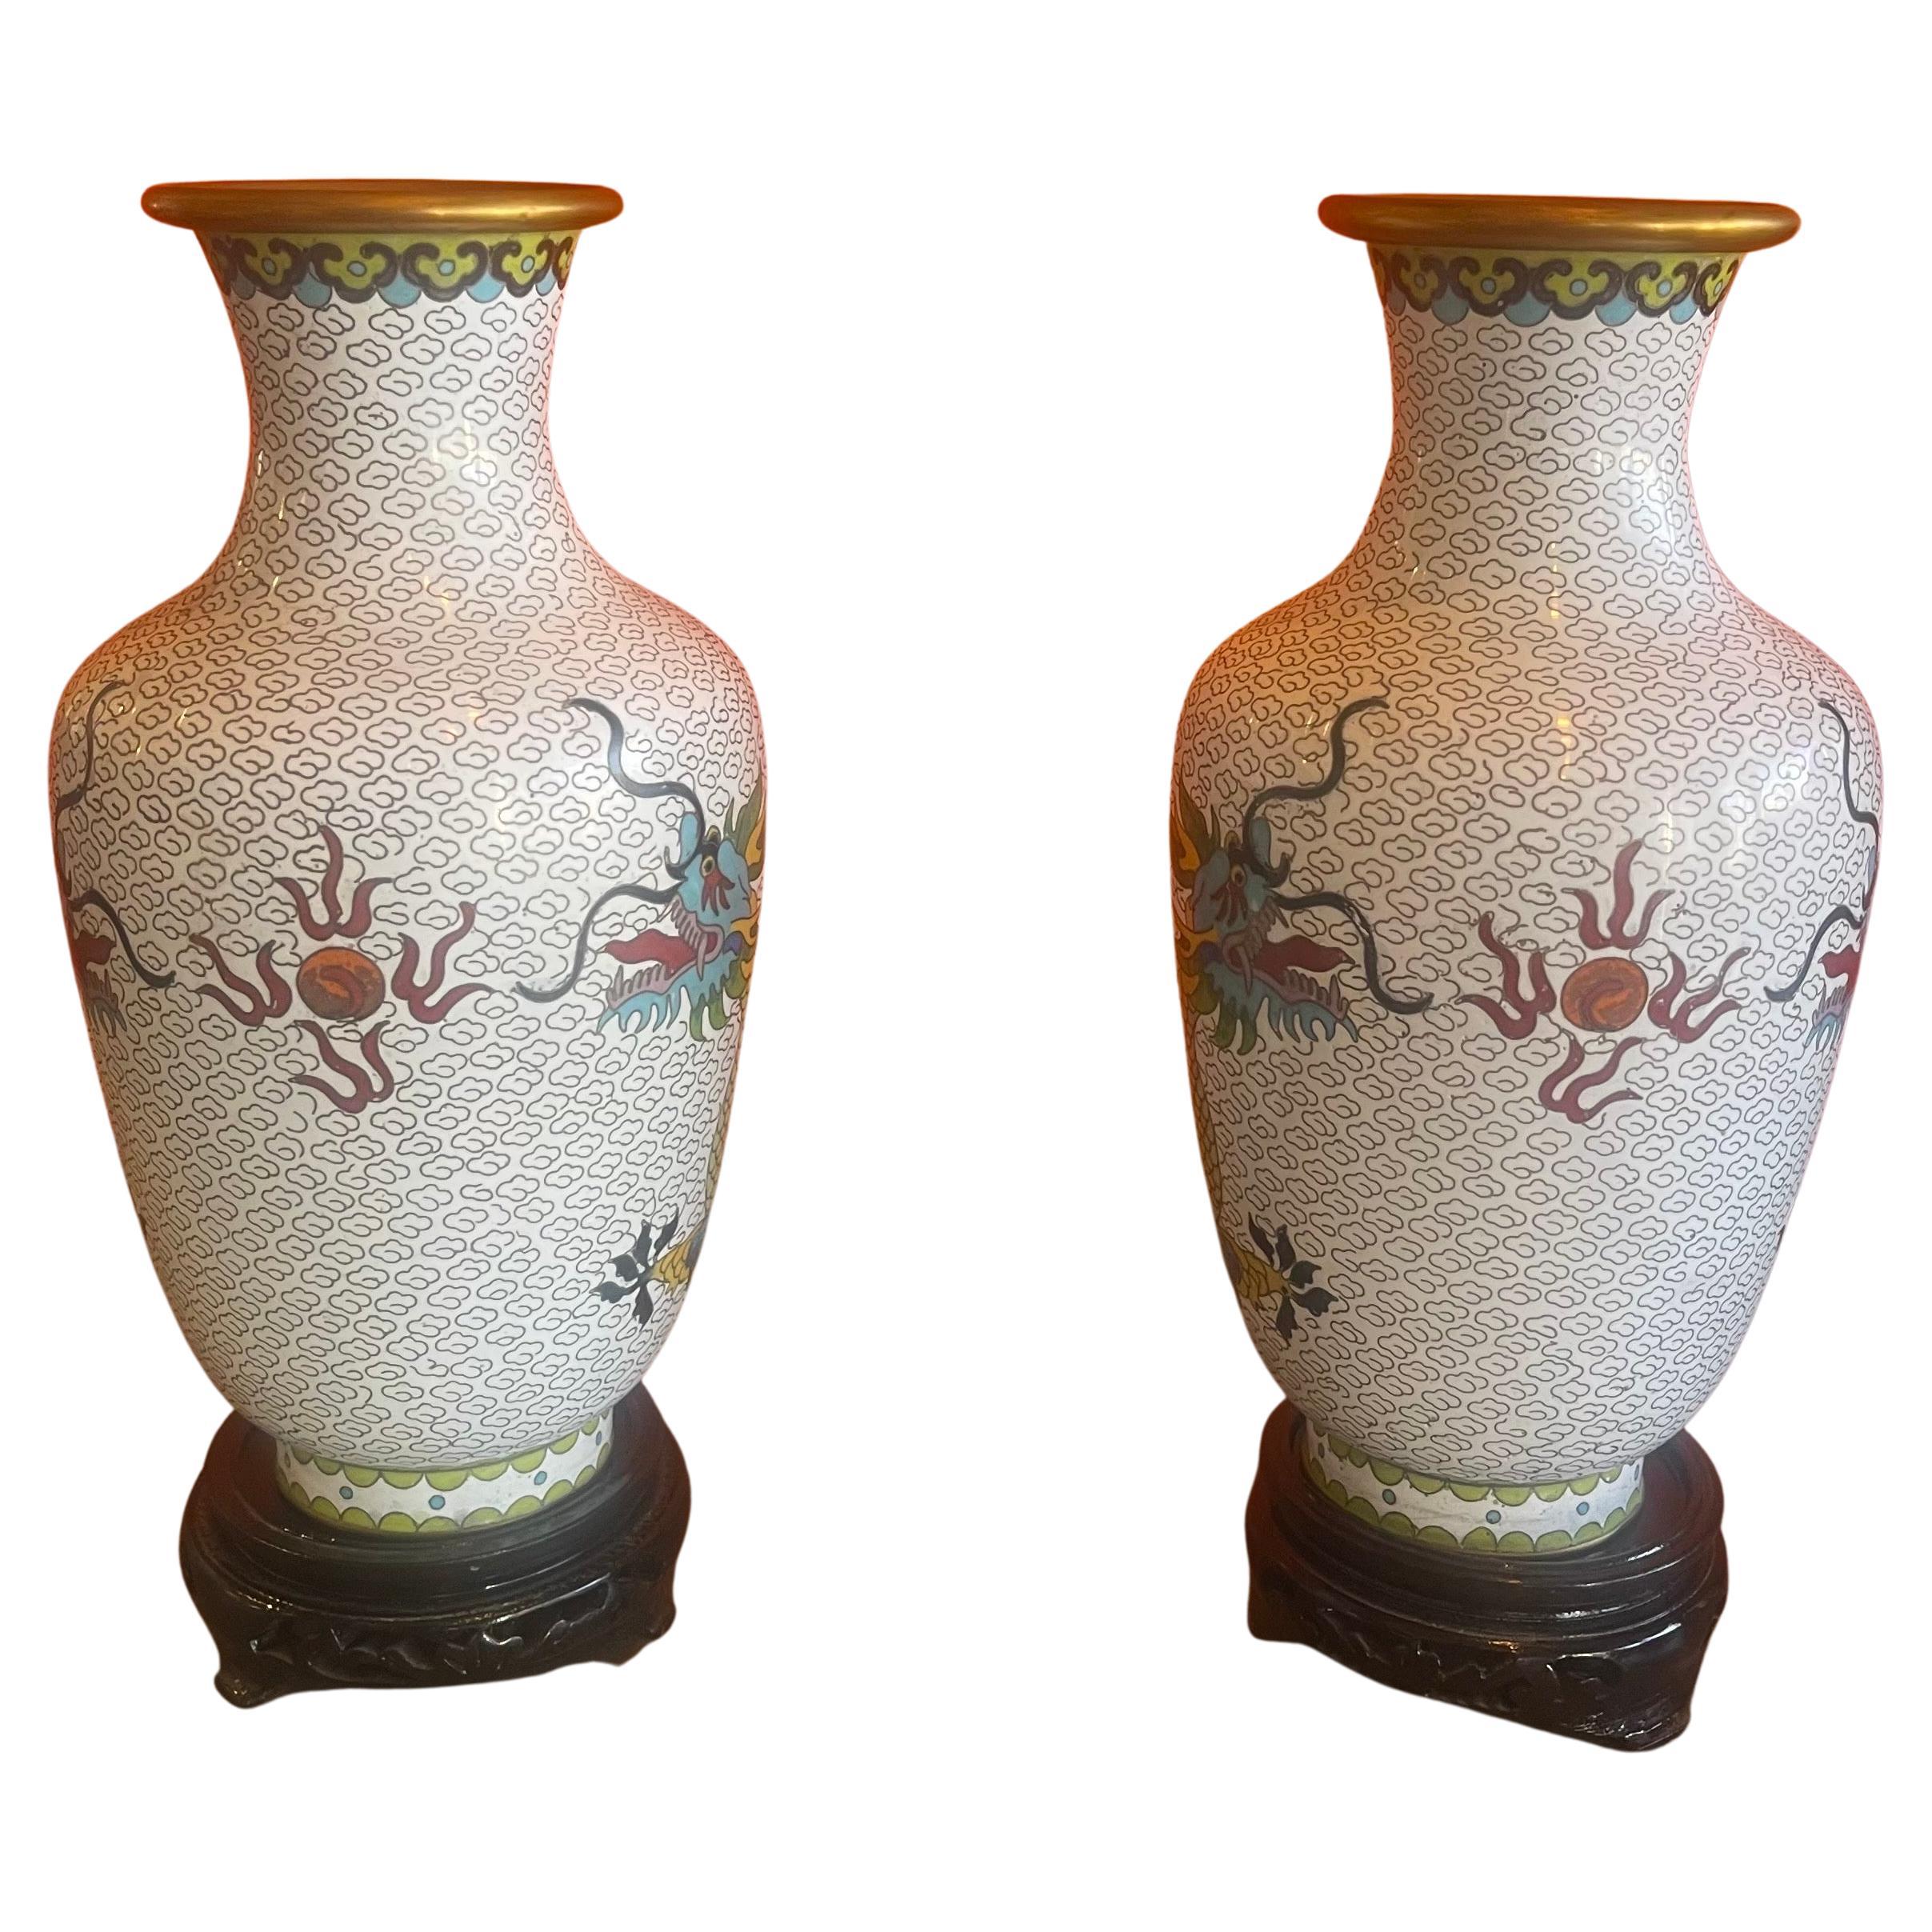 Ein schönes gespiegeltes Paar chinesischer Cloisonné-Vasen mit Drachenmotiv, ca. 1960er Jahre. Die Vasen sind in sehr gutem Zustand ohne Dellen oder Beulen und messen 5,25 